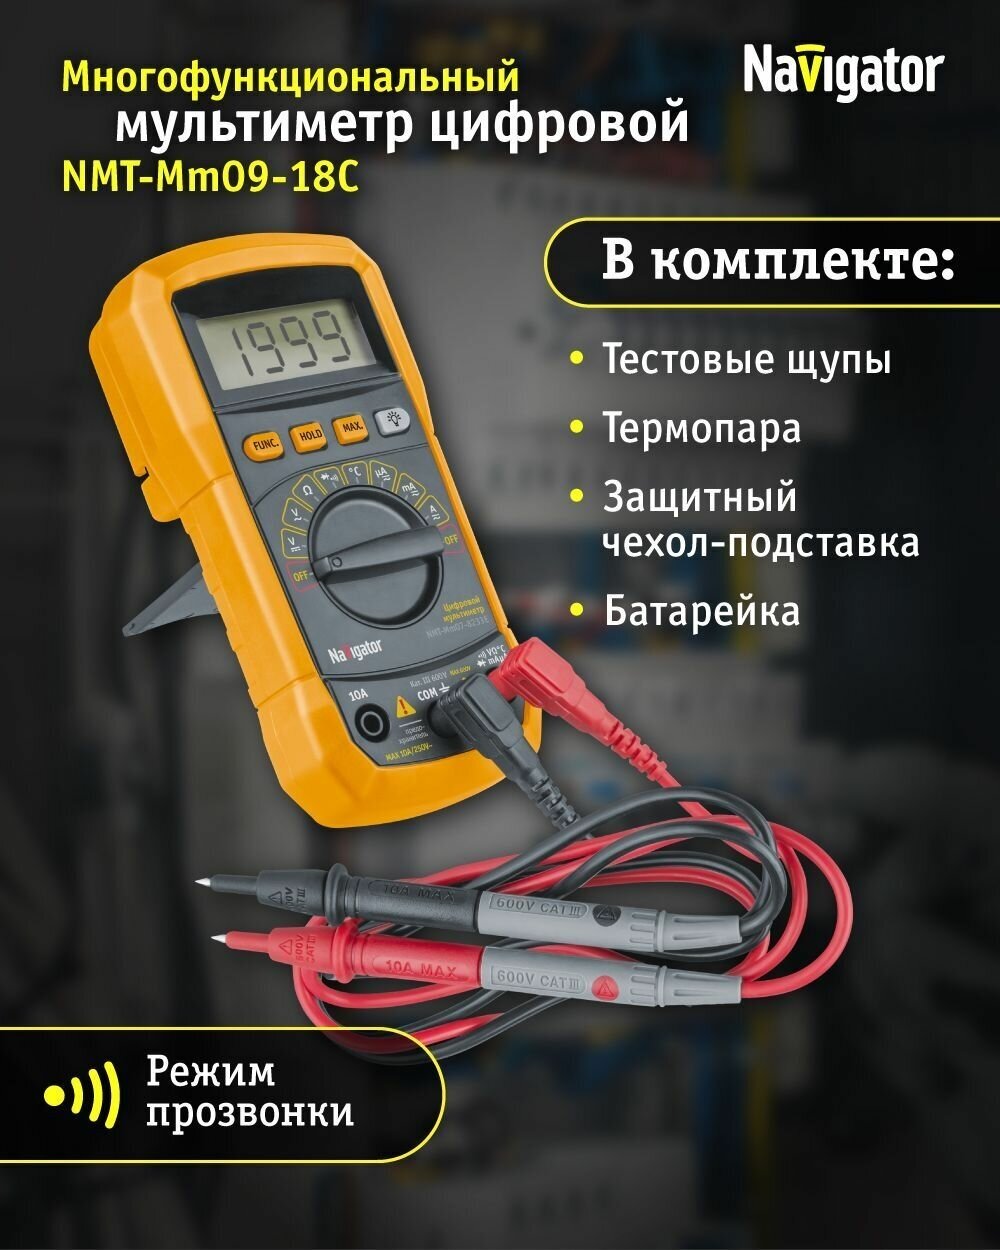 Профессиональный цифровой мультиметр Navigator 93 591 NMT-Mm07